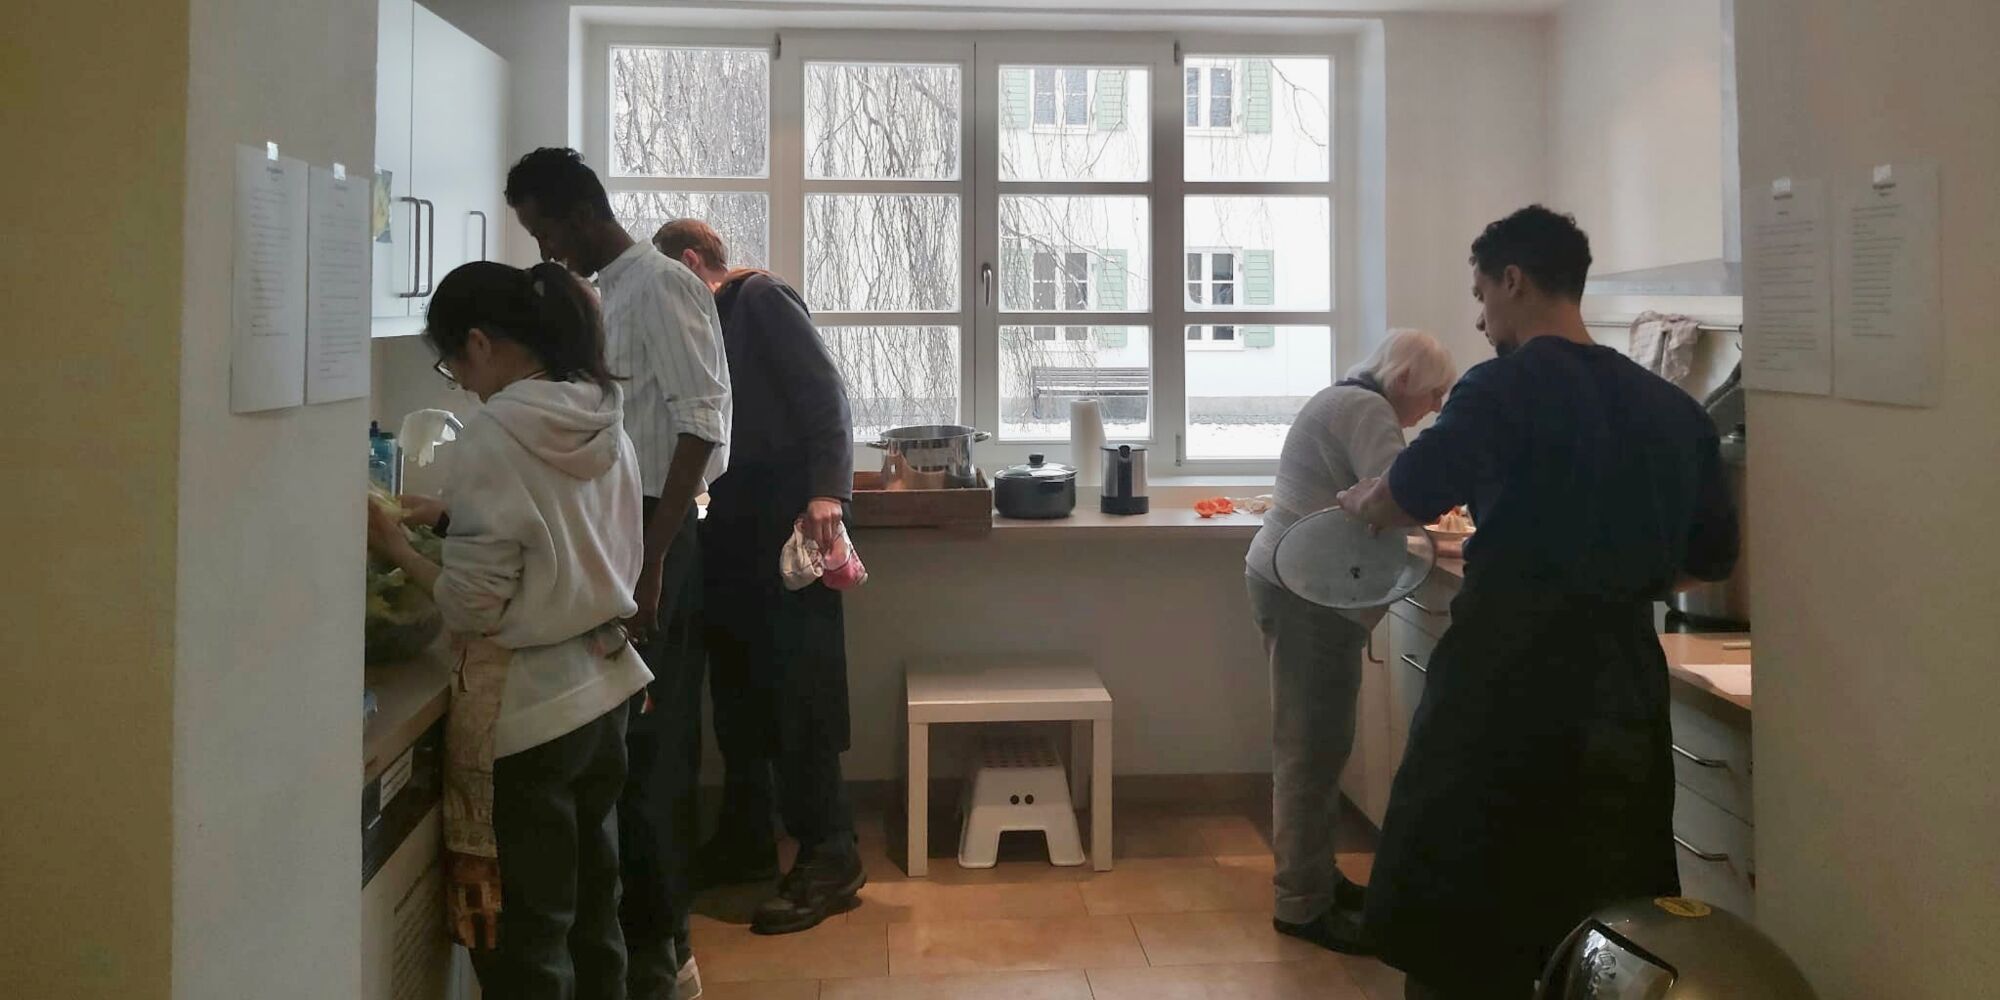 Hier sieht man mehrere Menschen, die links und rechts jeweils an Küchenzeilen stehen und kochen oder abspülen.